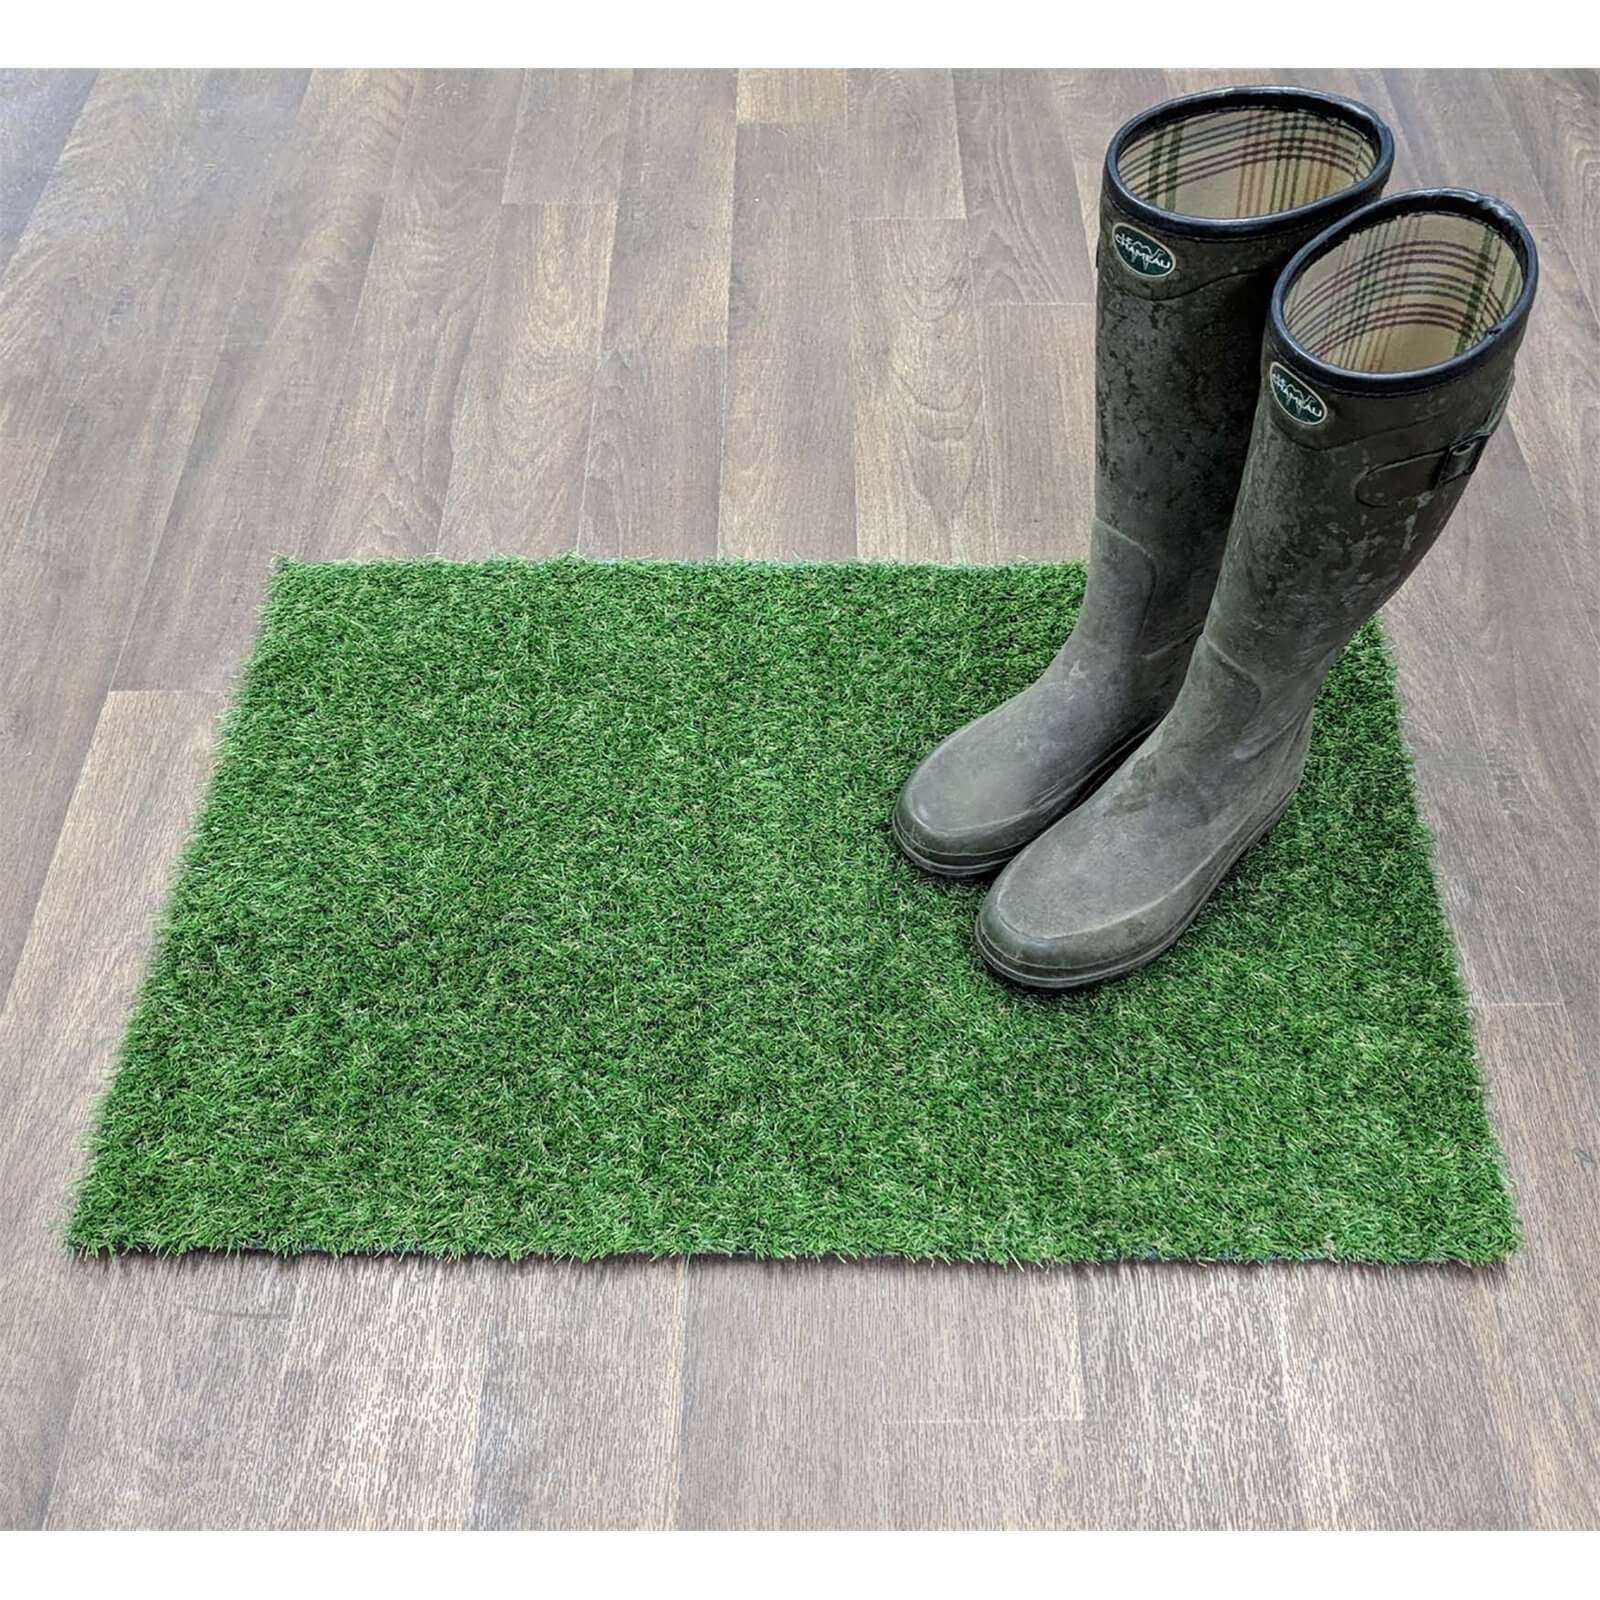 Nomow Artificial Grass Doormat